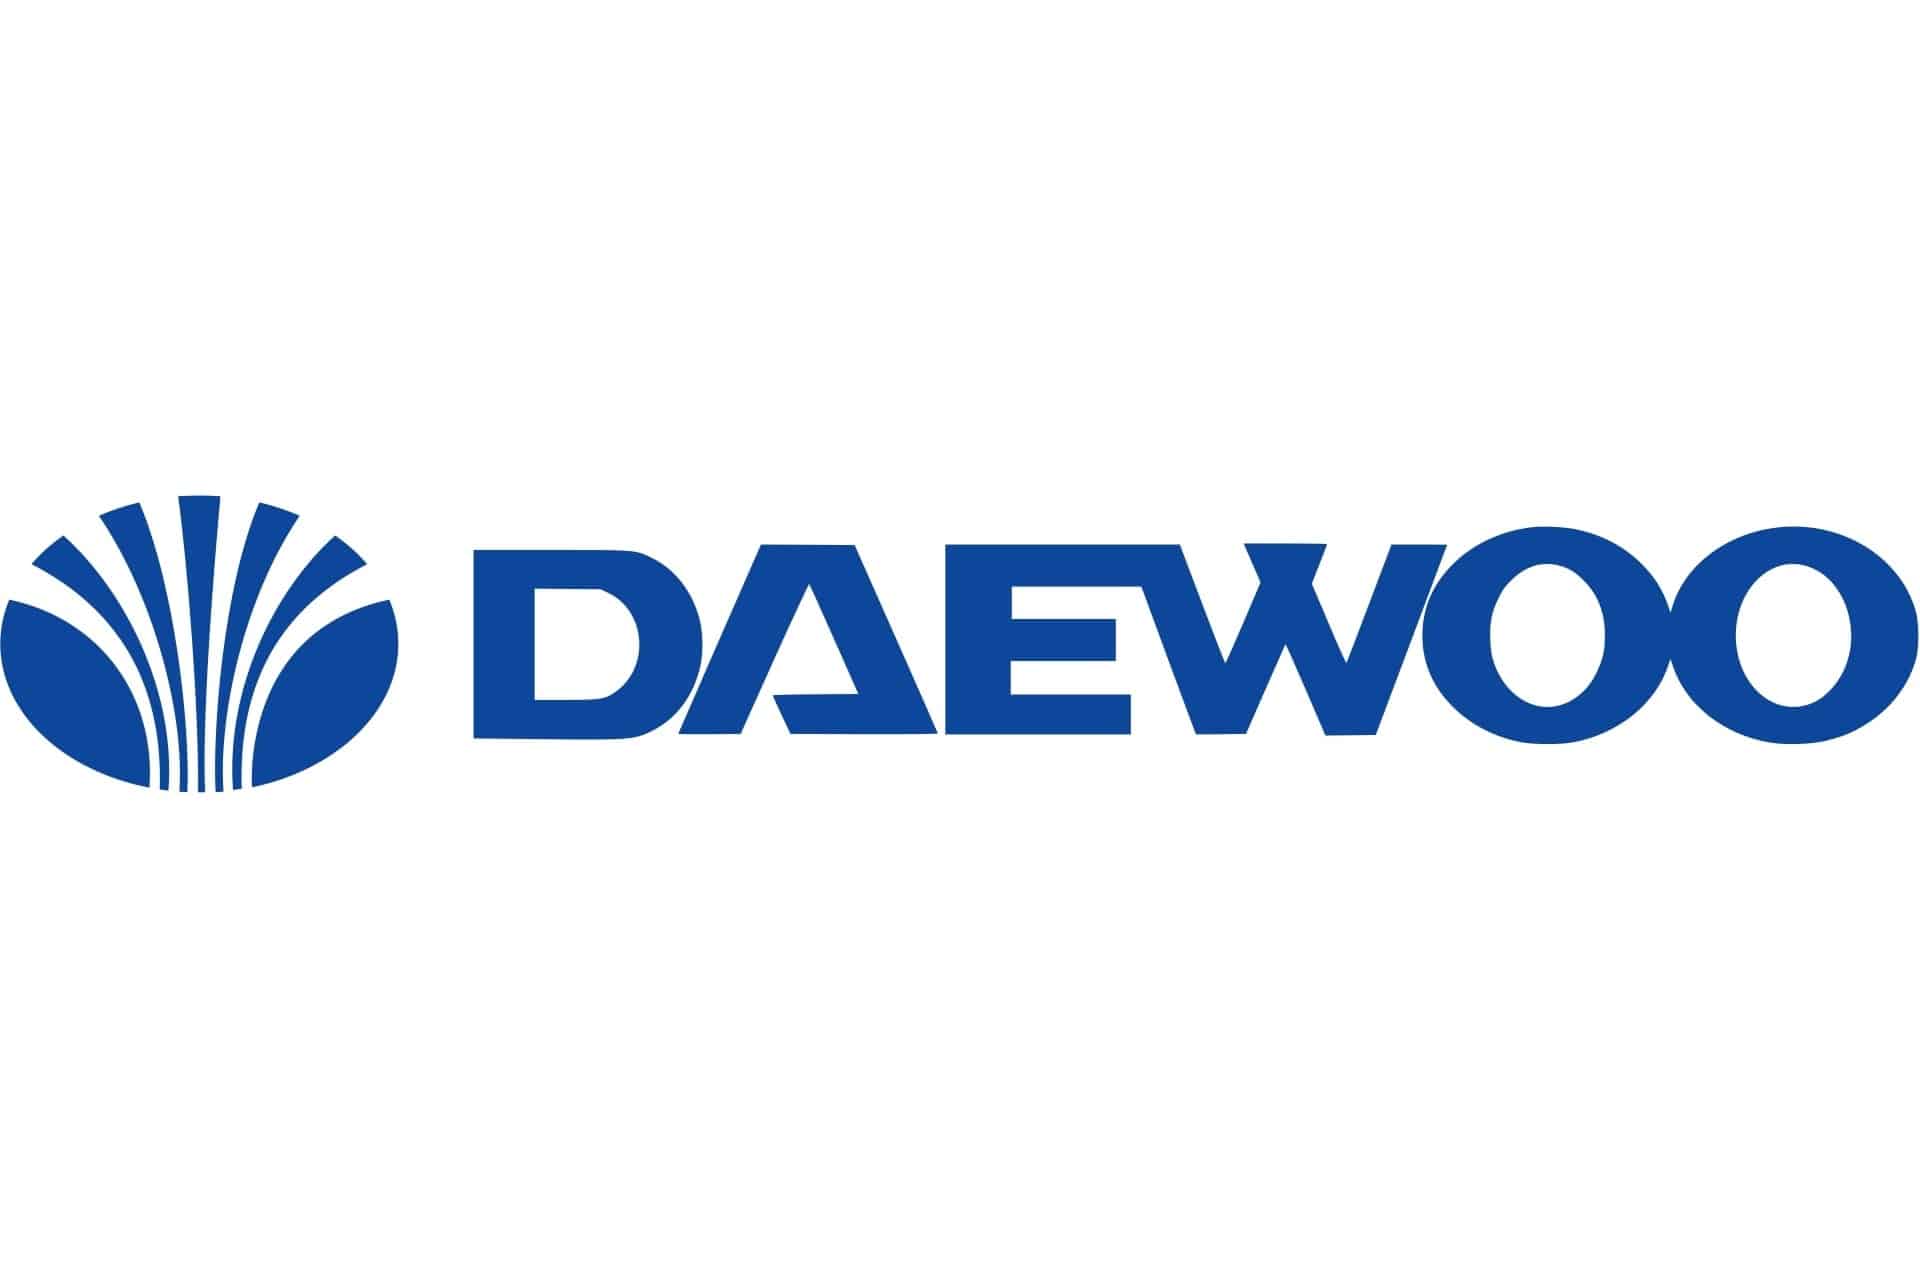 Daewoo planea su vuelta en el mercado indio